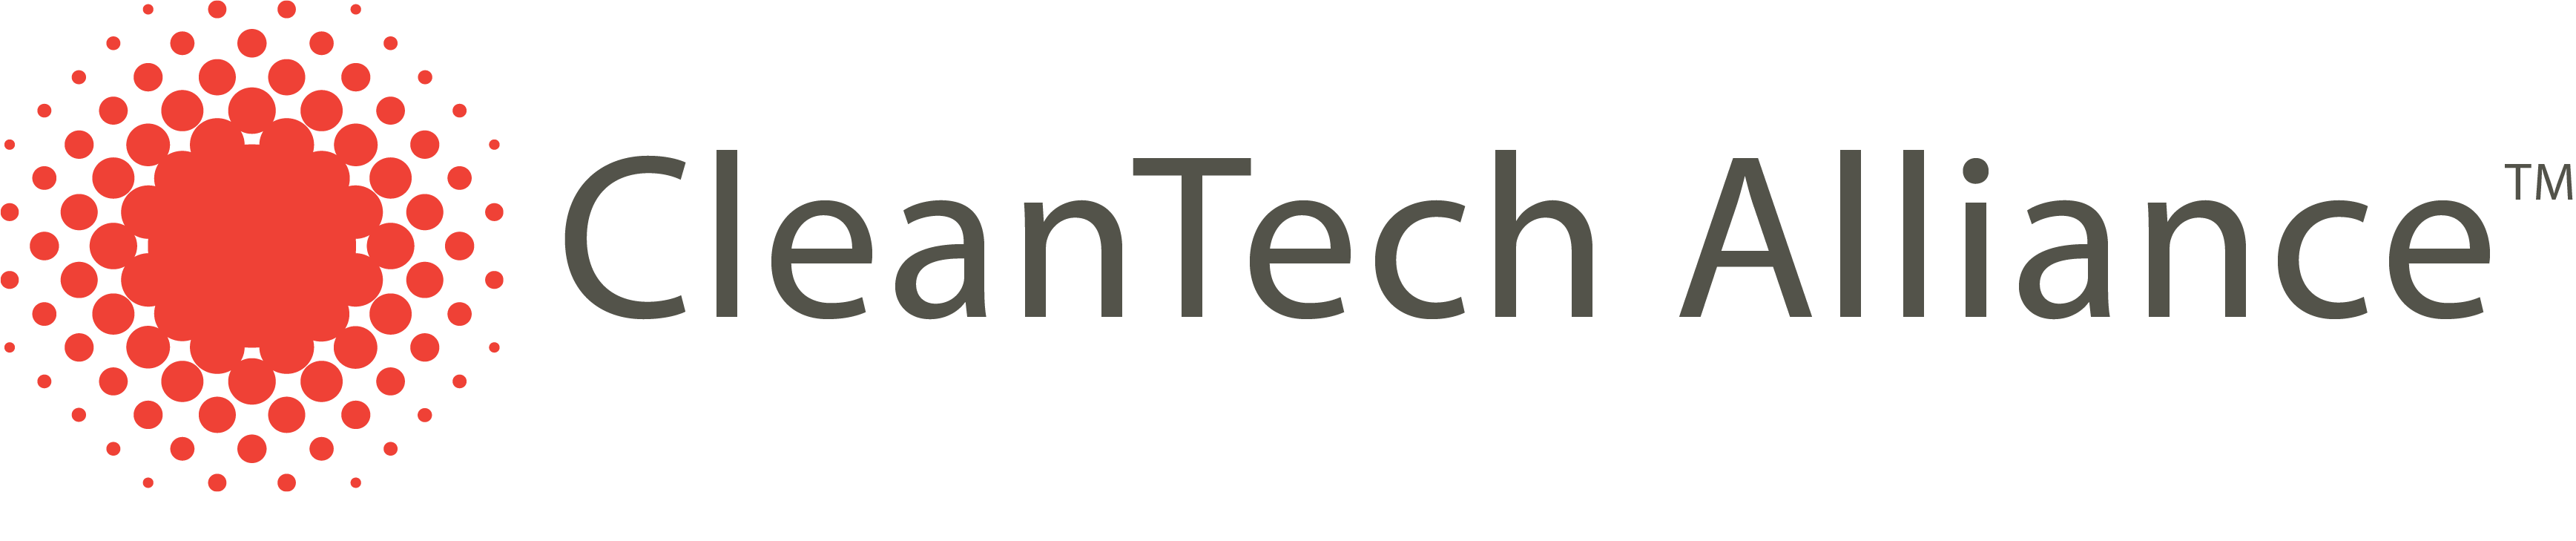 CleanTech Alliance logo